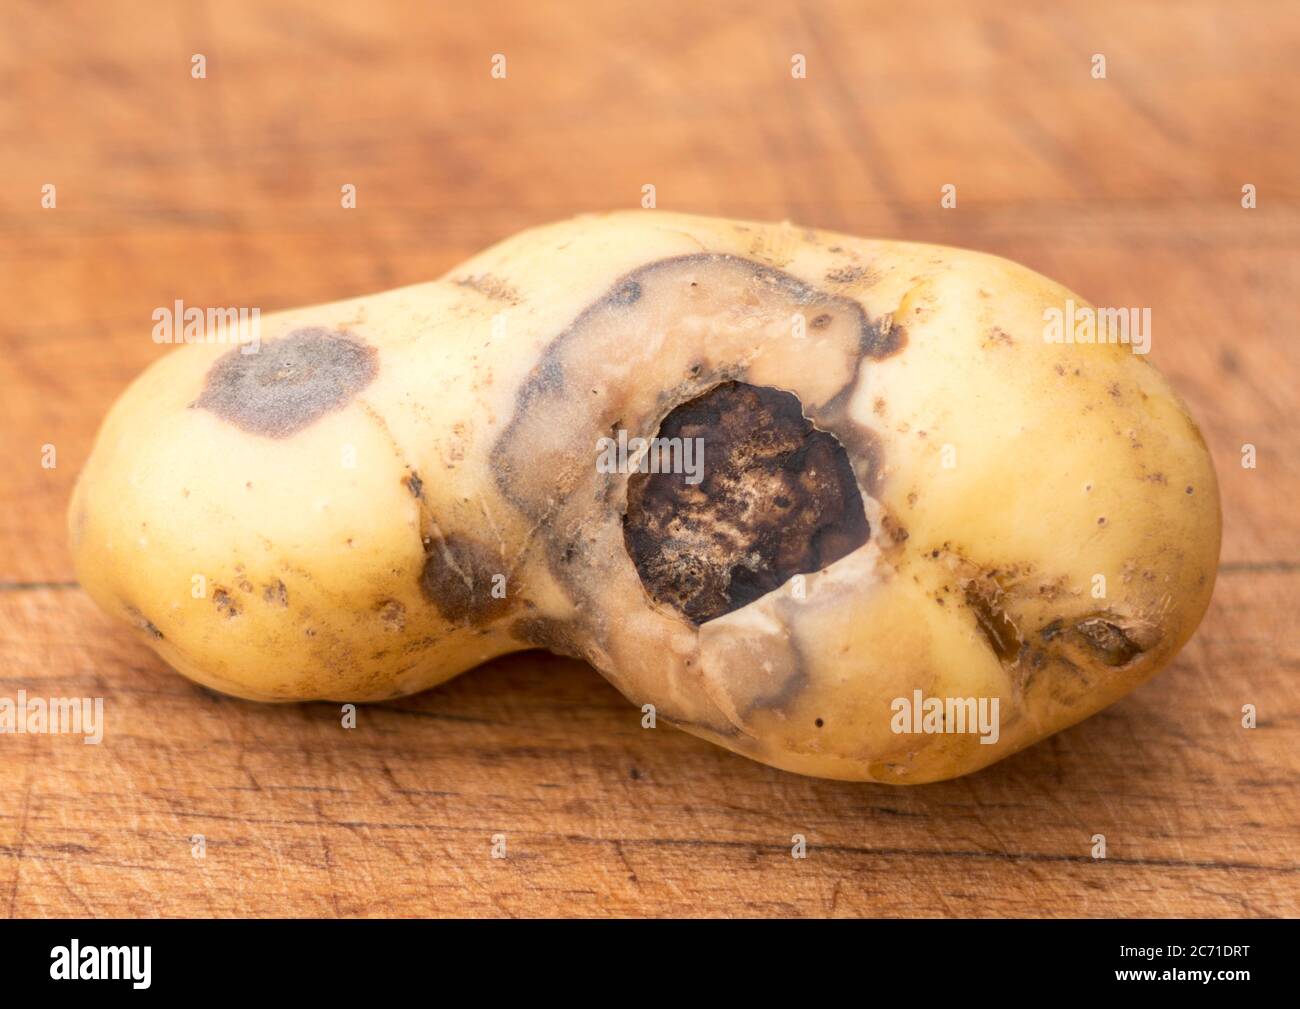 Eine Kartoffeltuber, Sorte Charlotte, zeigt Schäden durch Pilzerkrankungen, möglicherweise Gangrän. Stockfoto